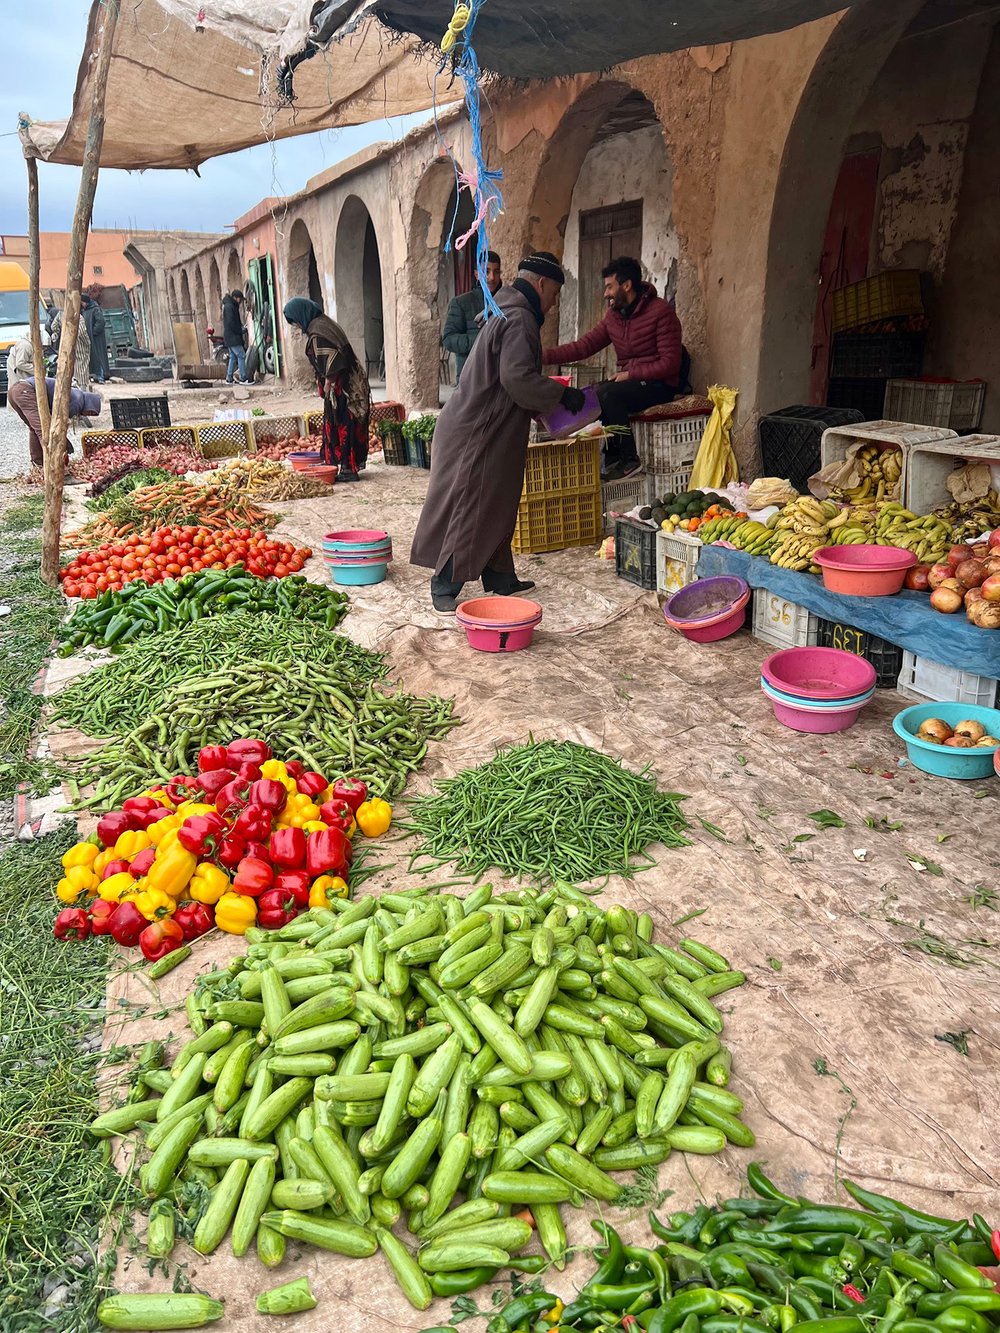 Msemrir-Souk-Morocco-vegetables-for-sale.jpg